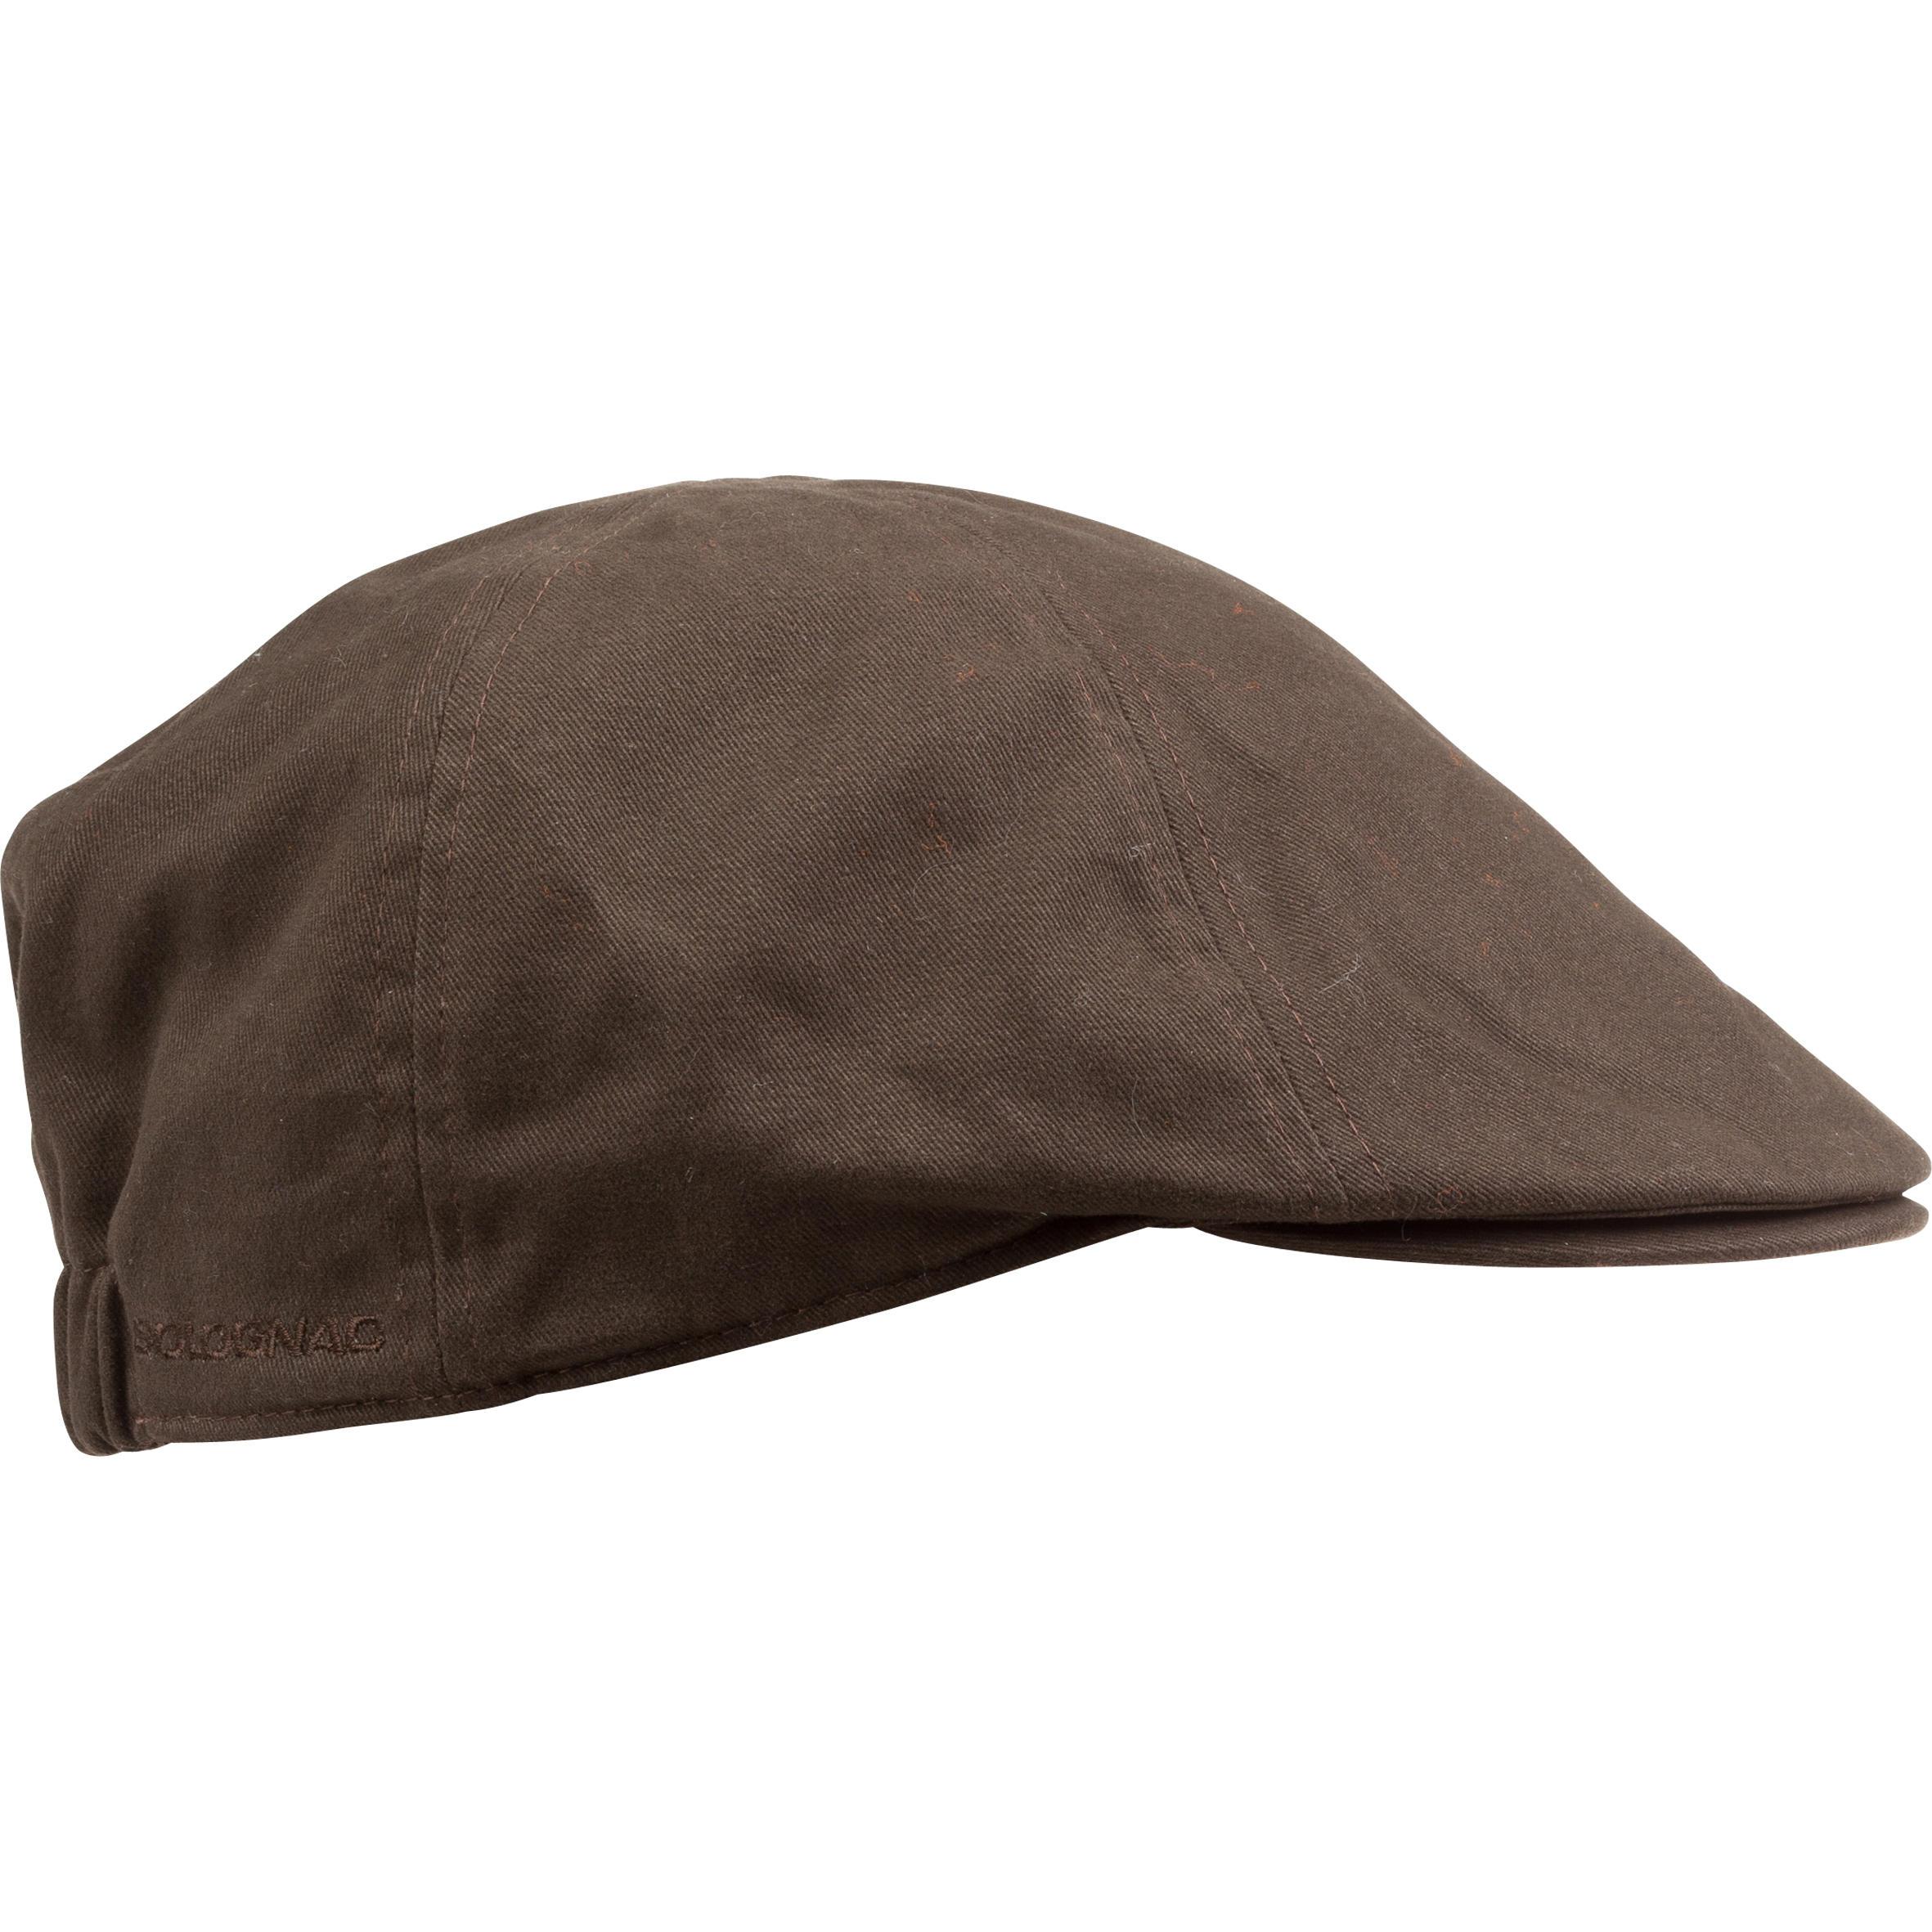 [ด่วน!! โปรโมชั่นมีจำนวนจำกัด] หมวกแฟล็ตแคปรุ่น STEPPE (สีน้ำตาล) สำหรับ ล่าสัตว์